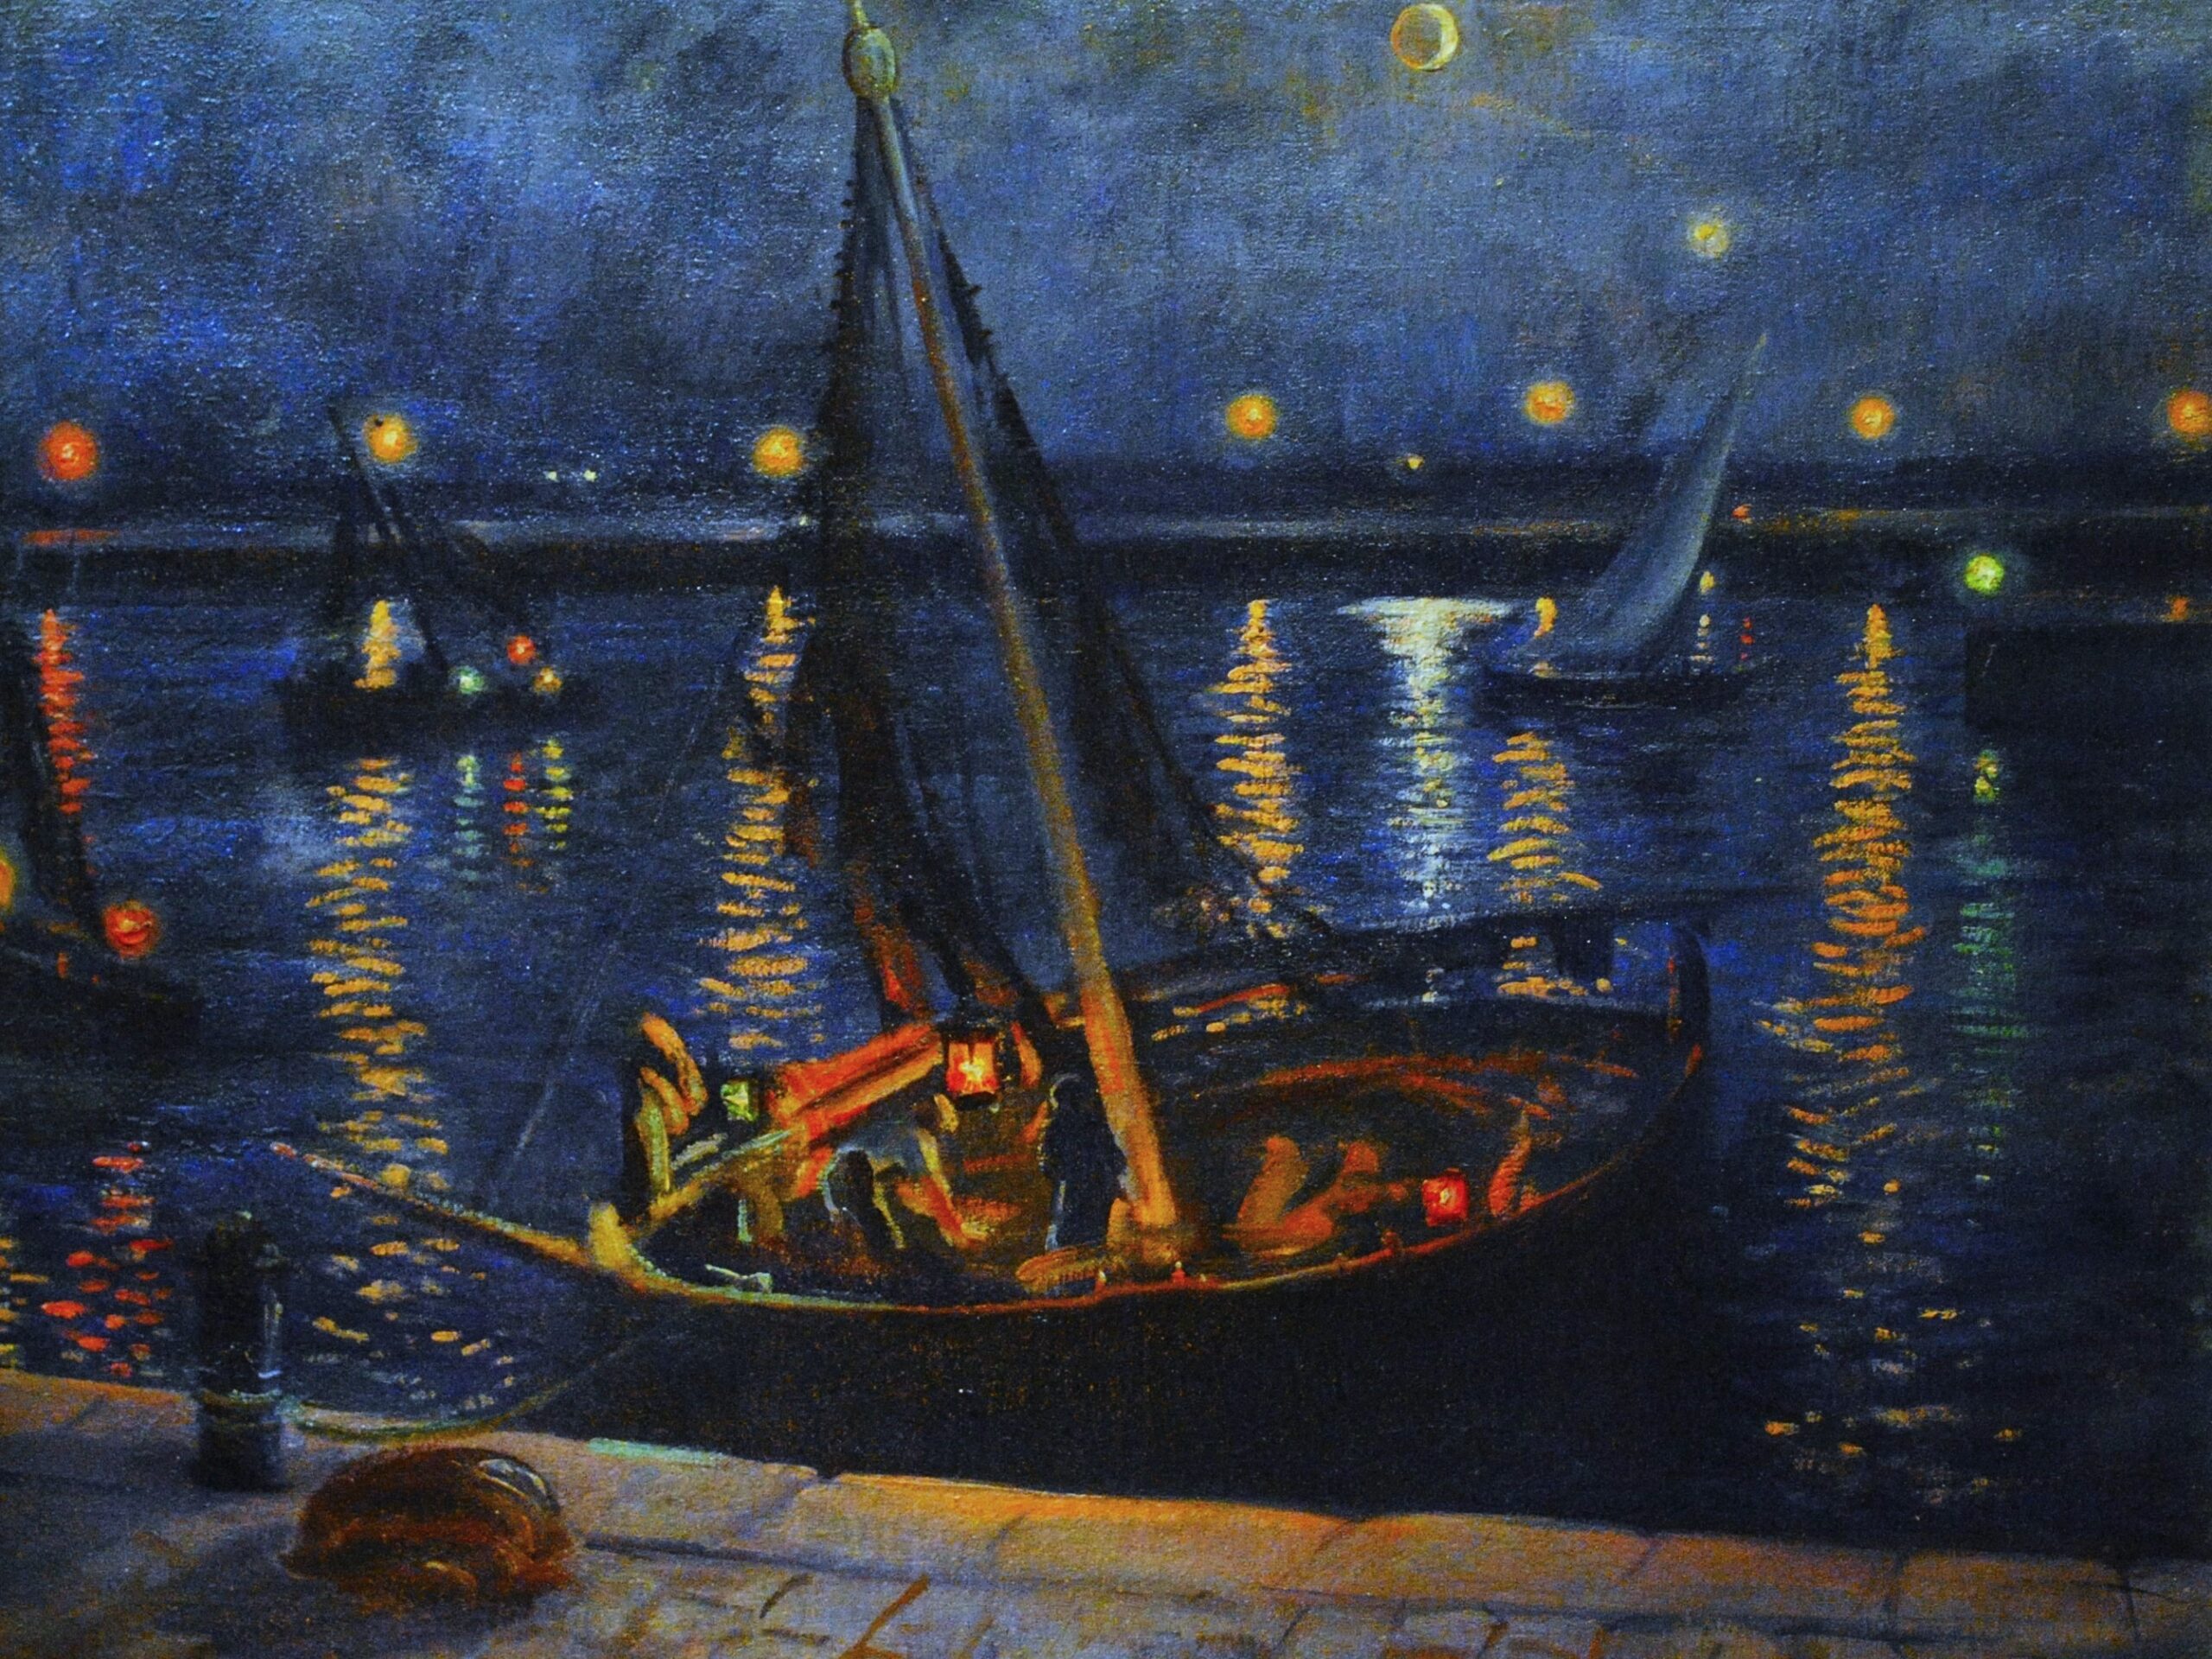 Pintura de José Manaut titulada Noche en el puerto, 1930. Óleo sobre lienzo.